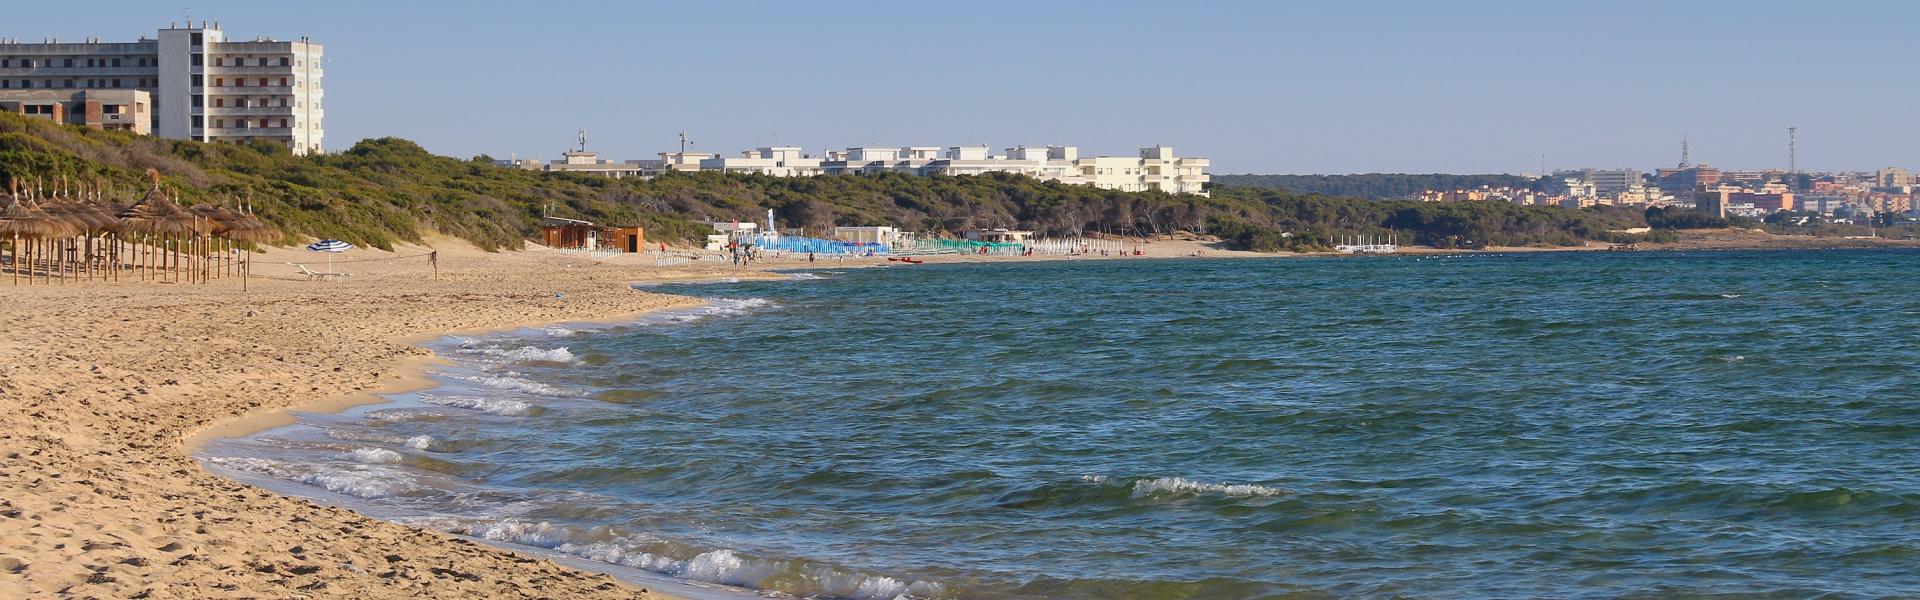 Rivabella Seaside View